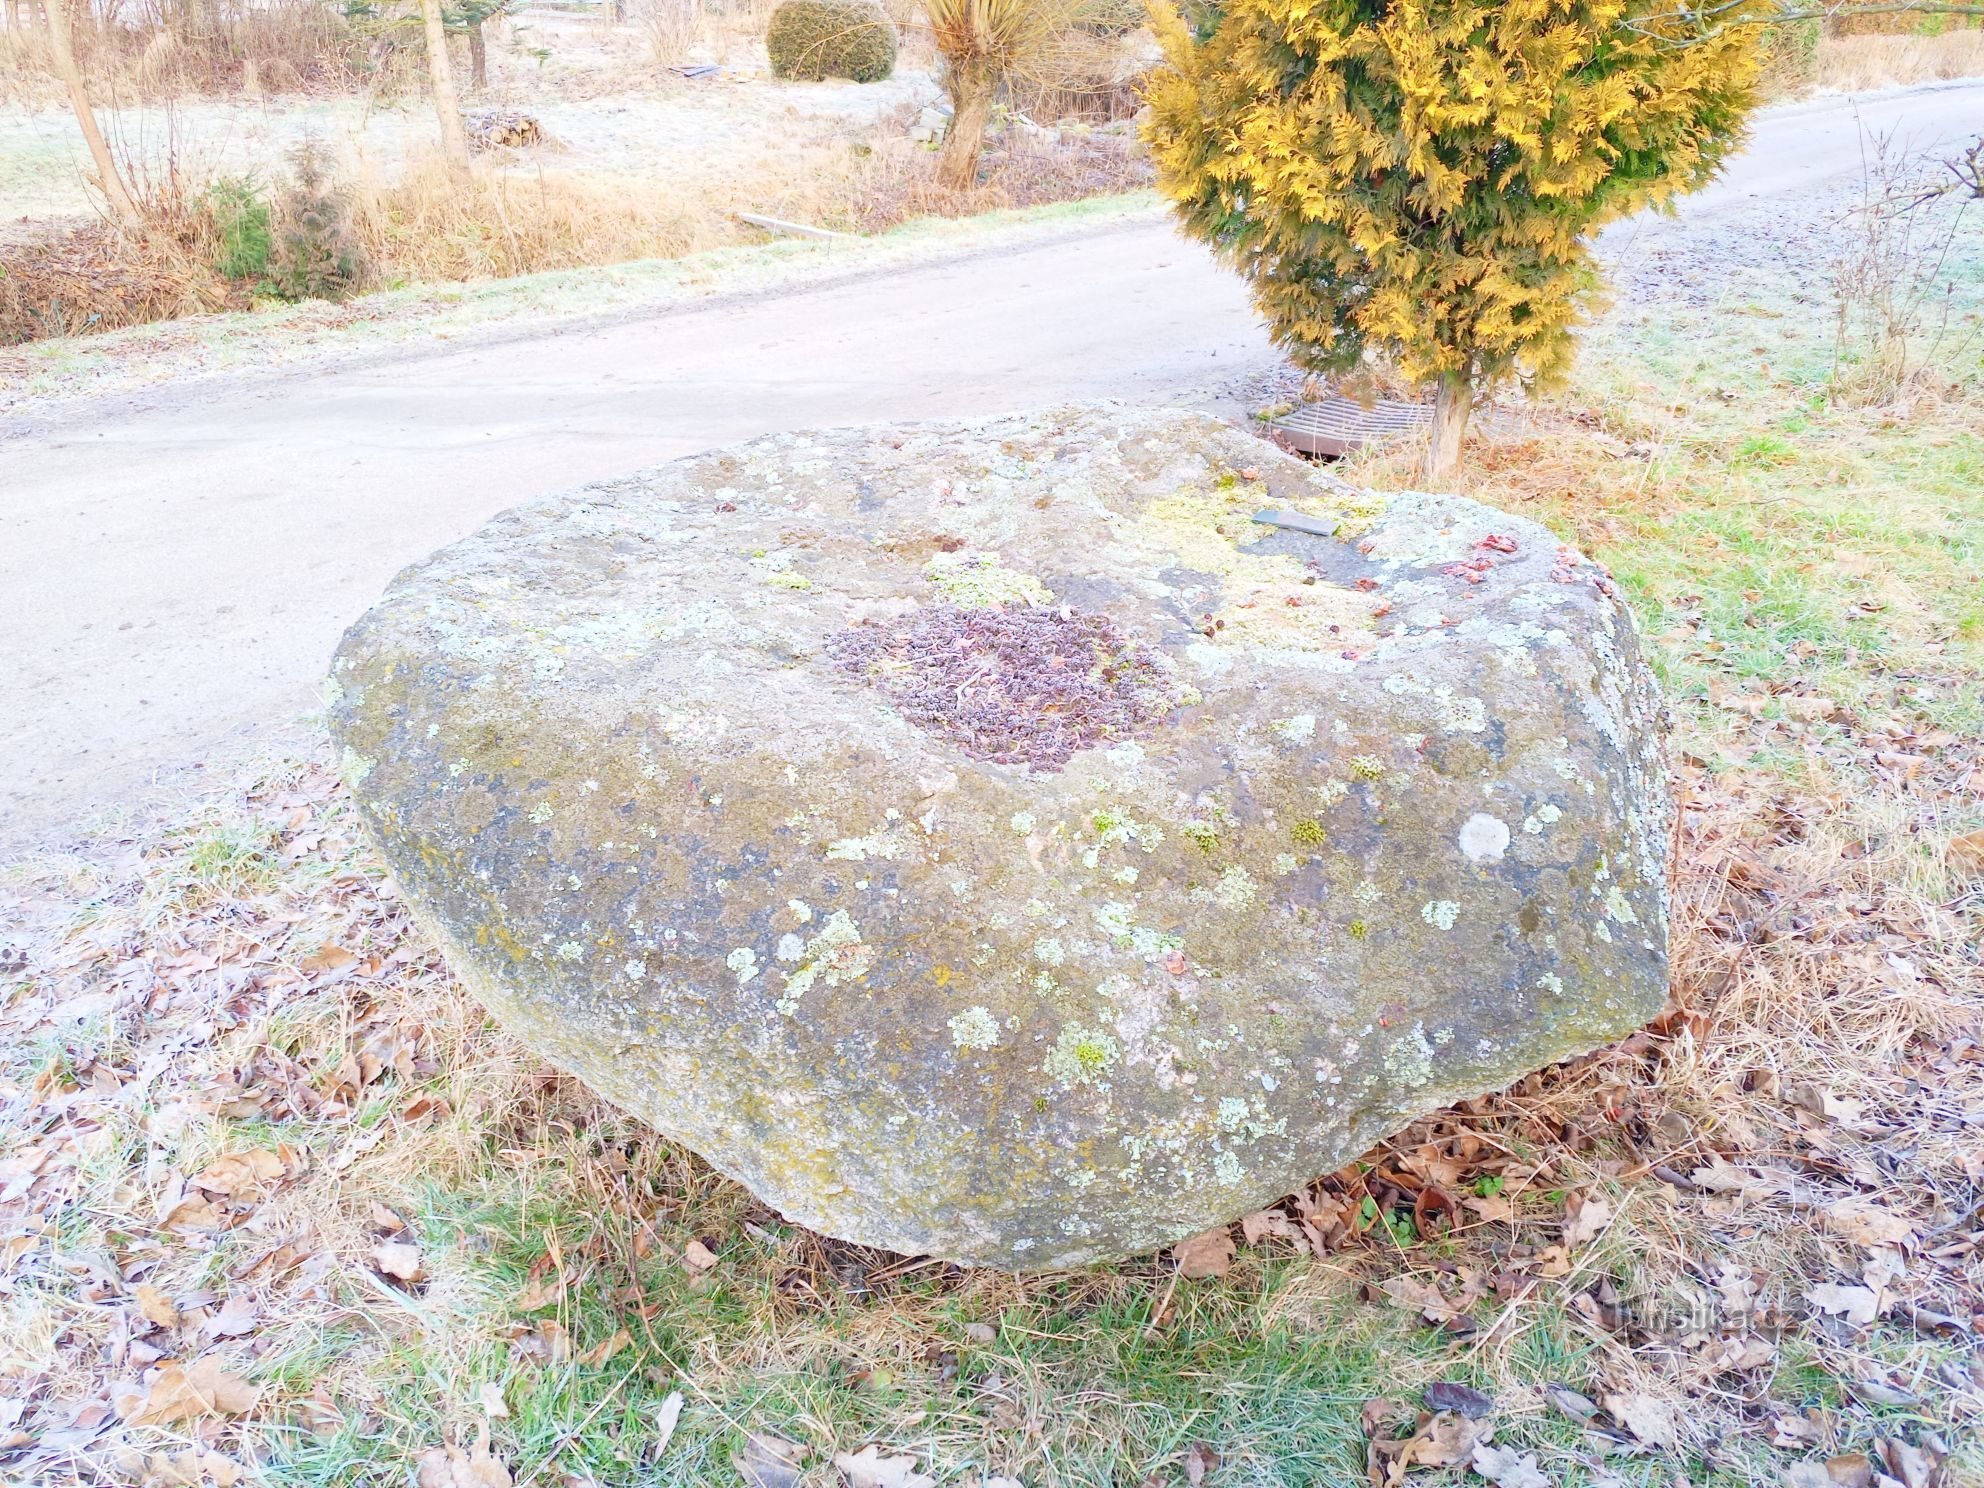 2. Zvěstonín 的石椅，JS 2